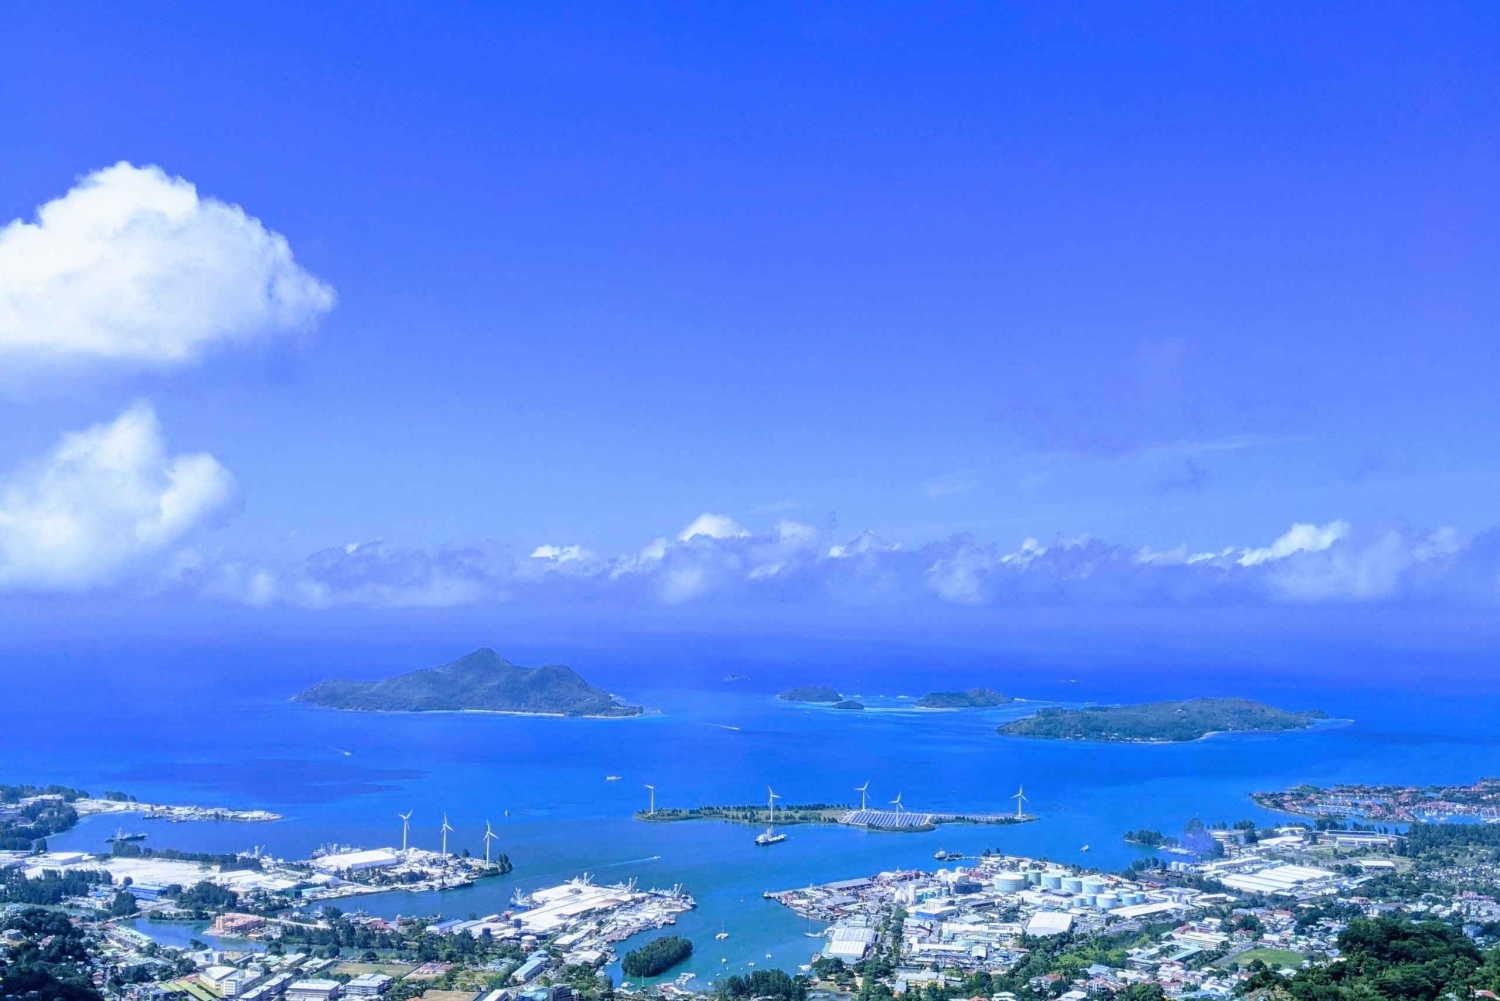 Kokopäiväretki: Seychellit: Patikointi ja paikallinen kalagrilli, Seychellit